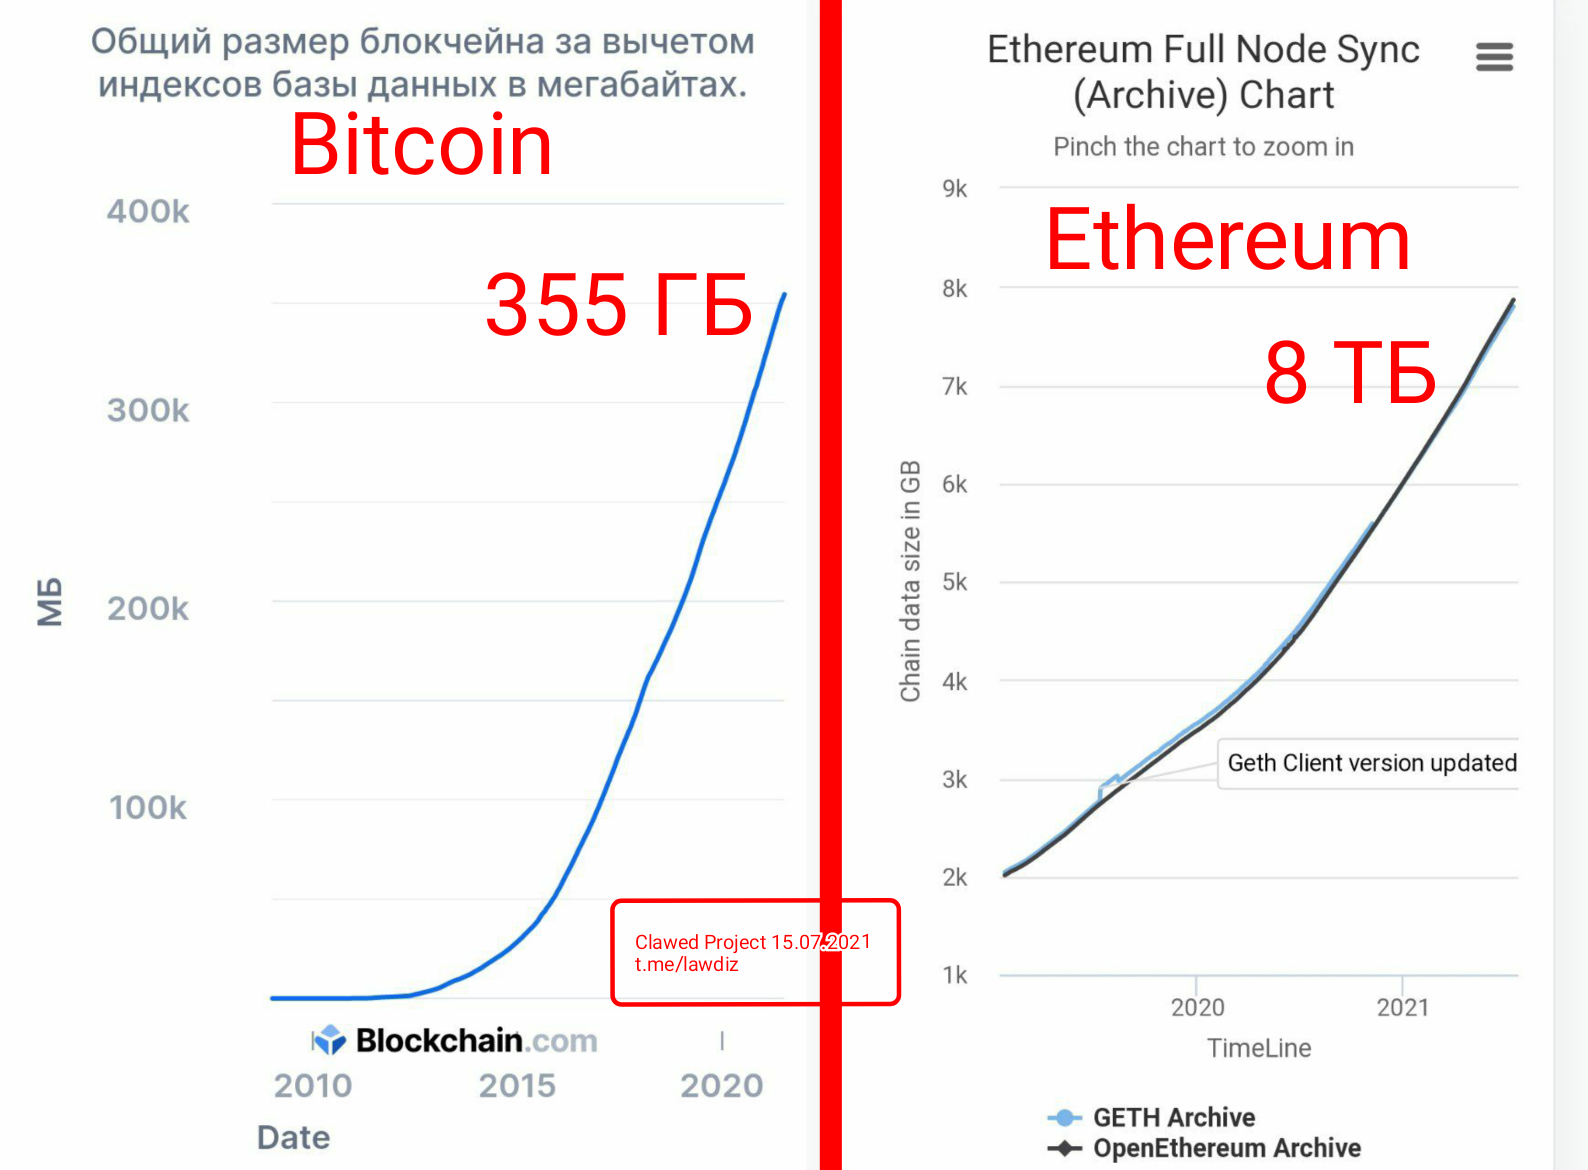 Bitcoin Blockchain Size